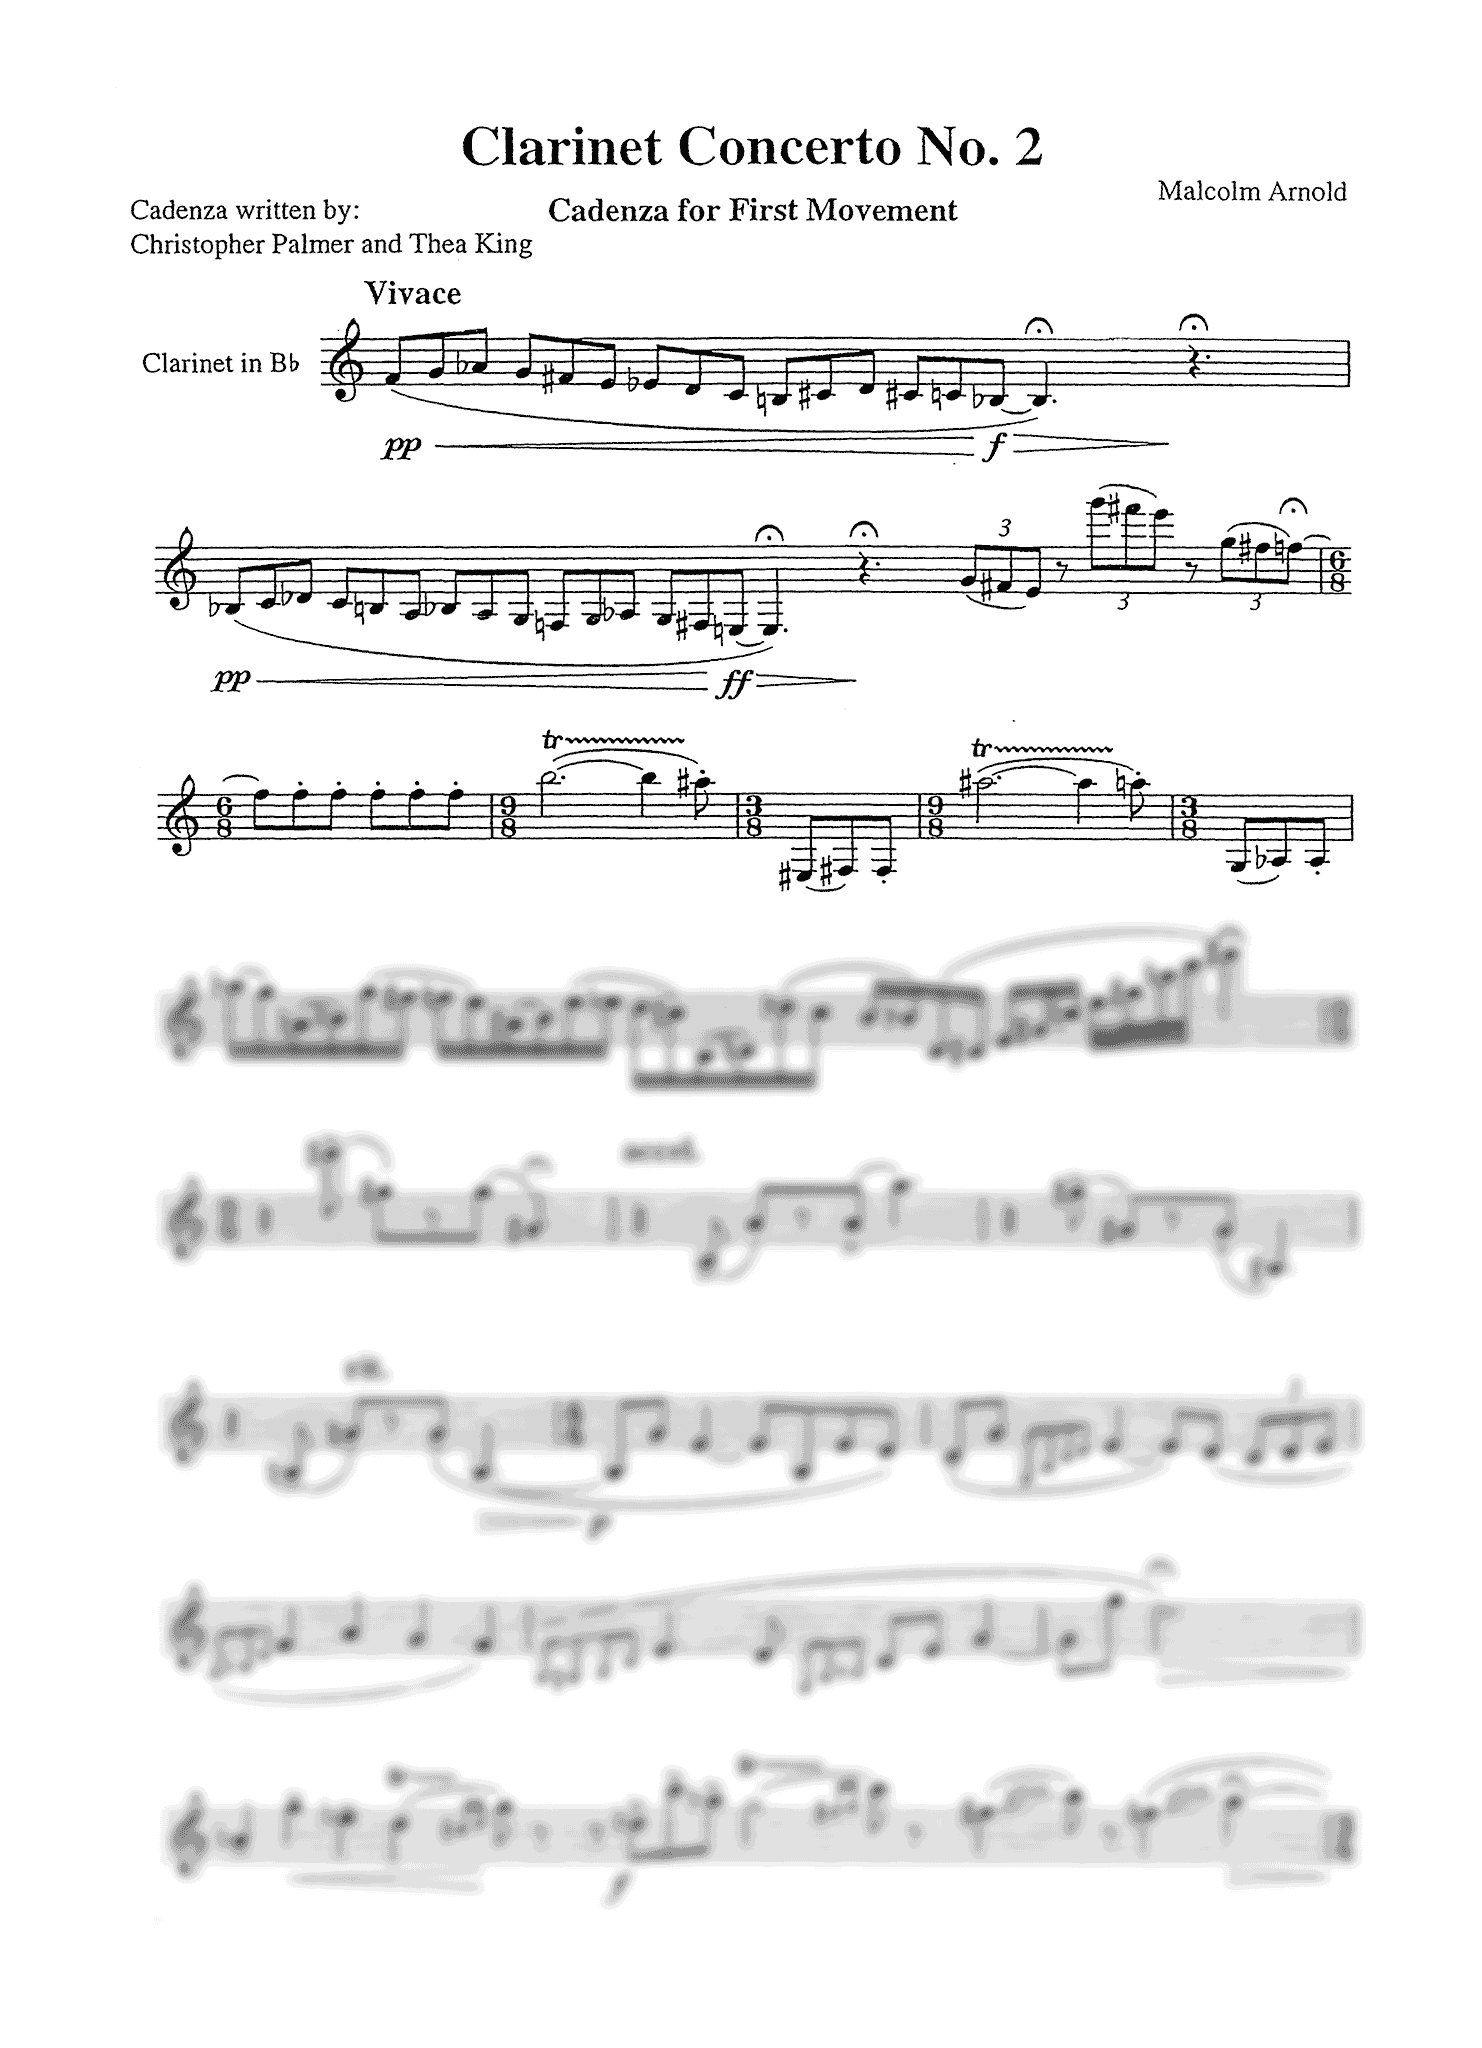 Arnold Clarinet Concerto No. 2, Op. 115 Palmer King cadenza page 1